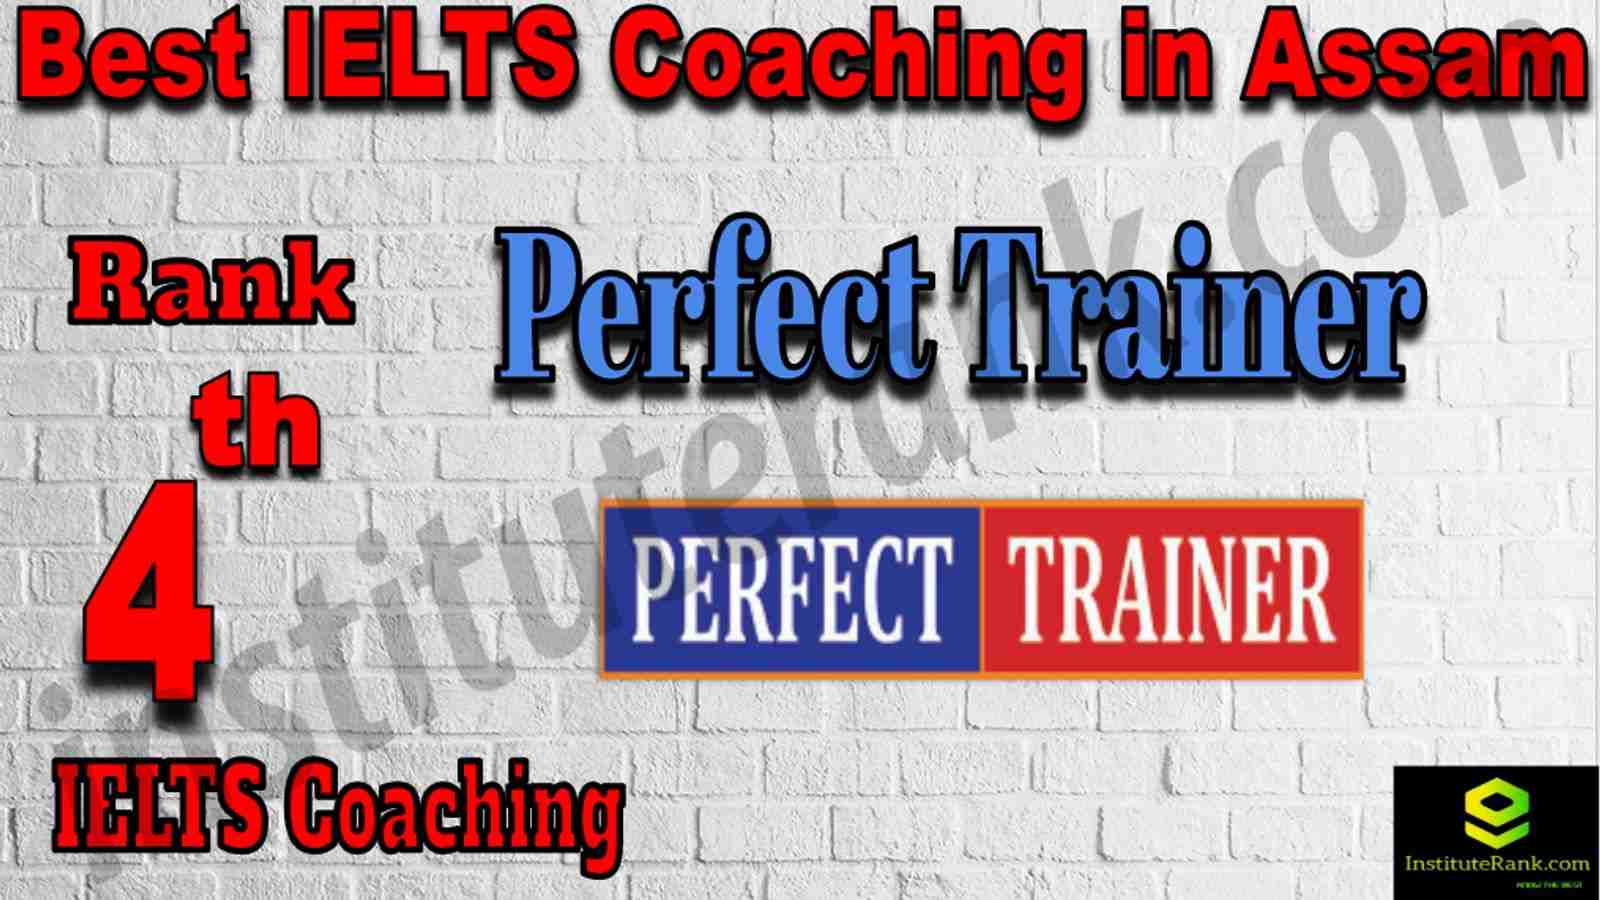 4th Best IELTS Coaching in Assam